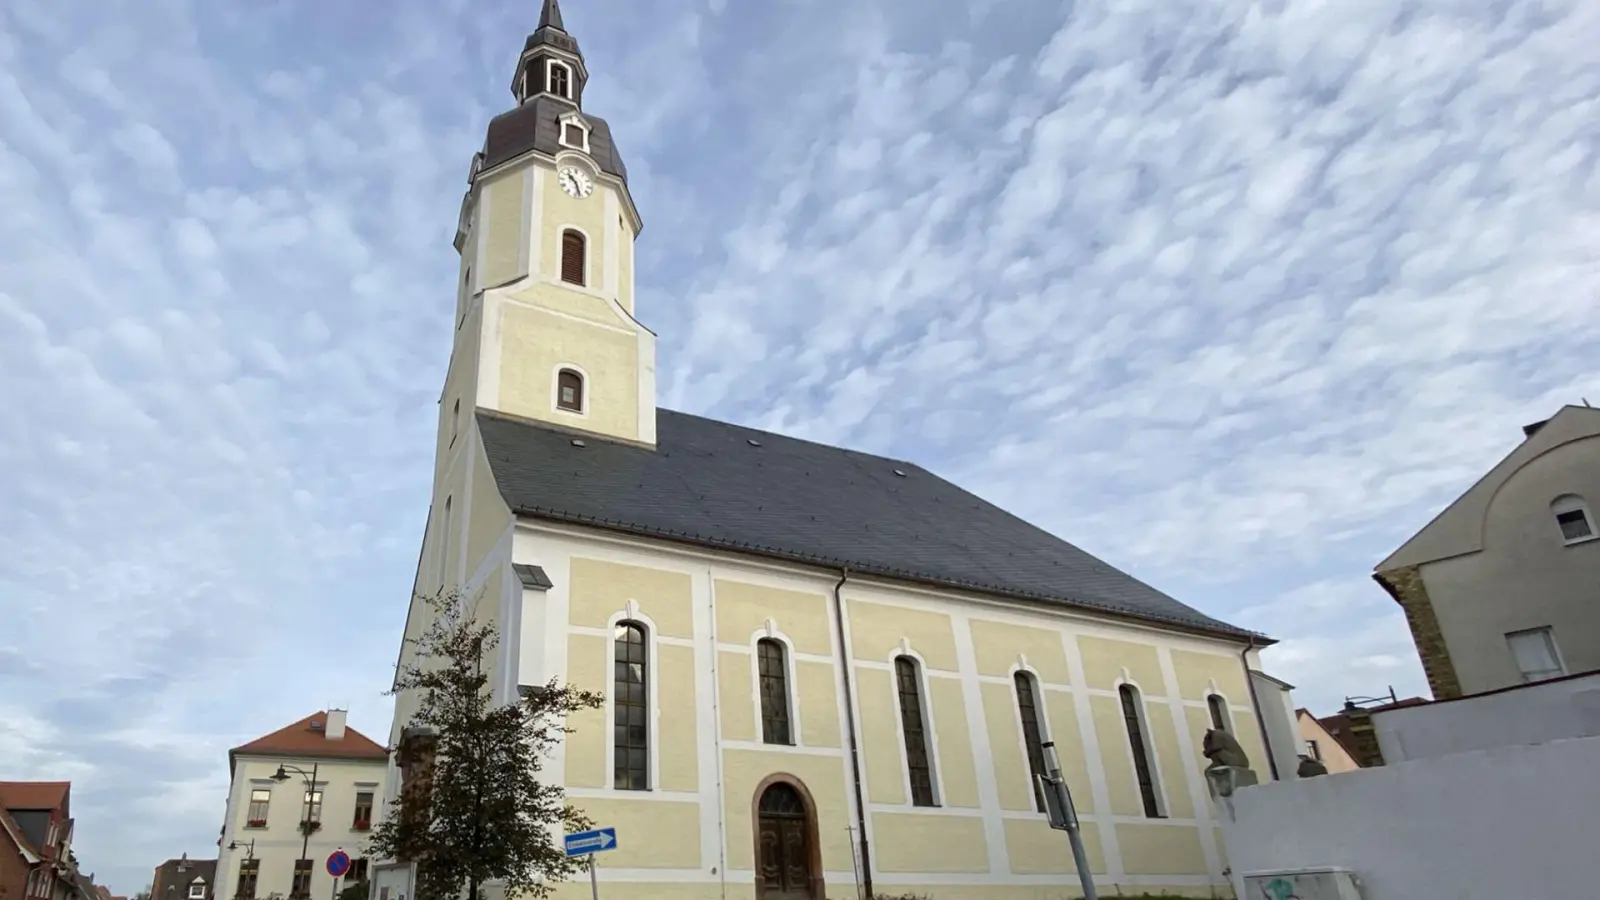 Krieg in der Ukraine: St.-Moritz-Kirche öffnet und lädt zum Friedensgebet (Foto: taucha-kompakt.de)